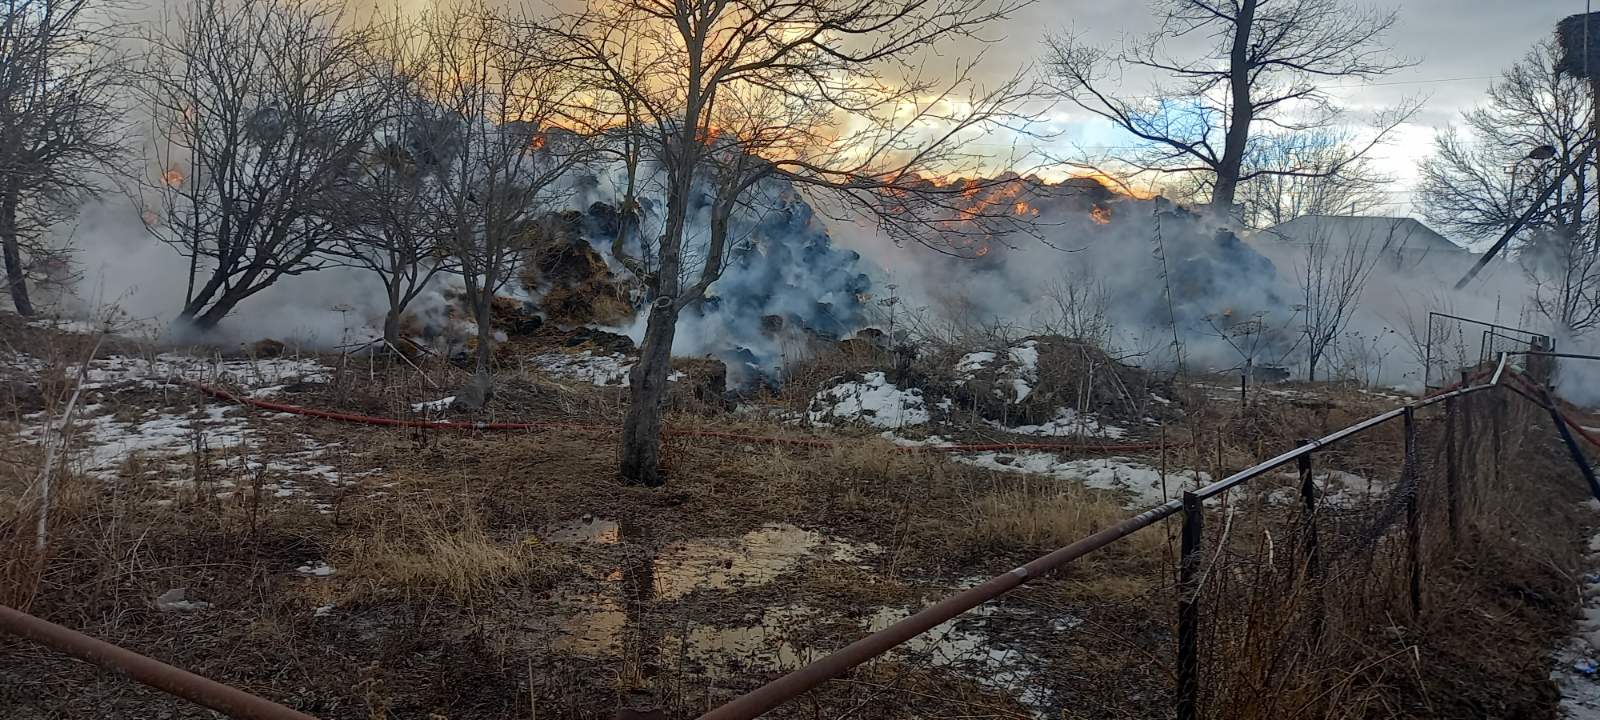 Միխայելովկա գյուղում այրվում է անասնակեր